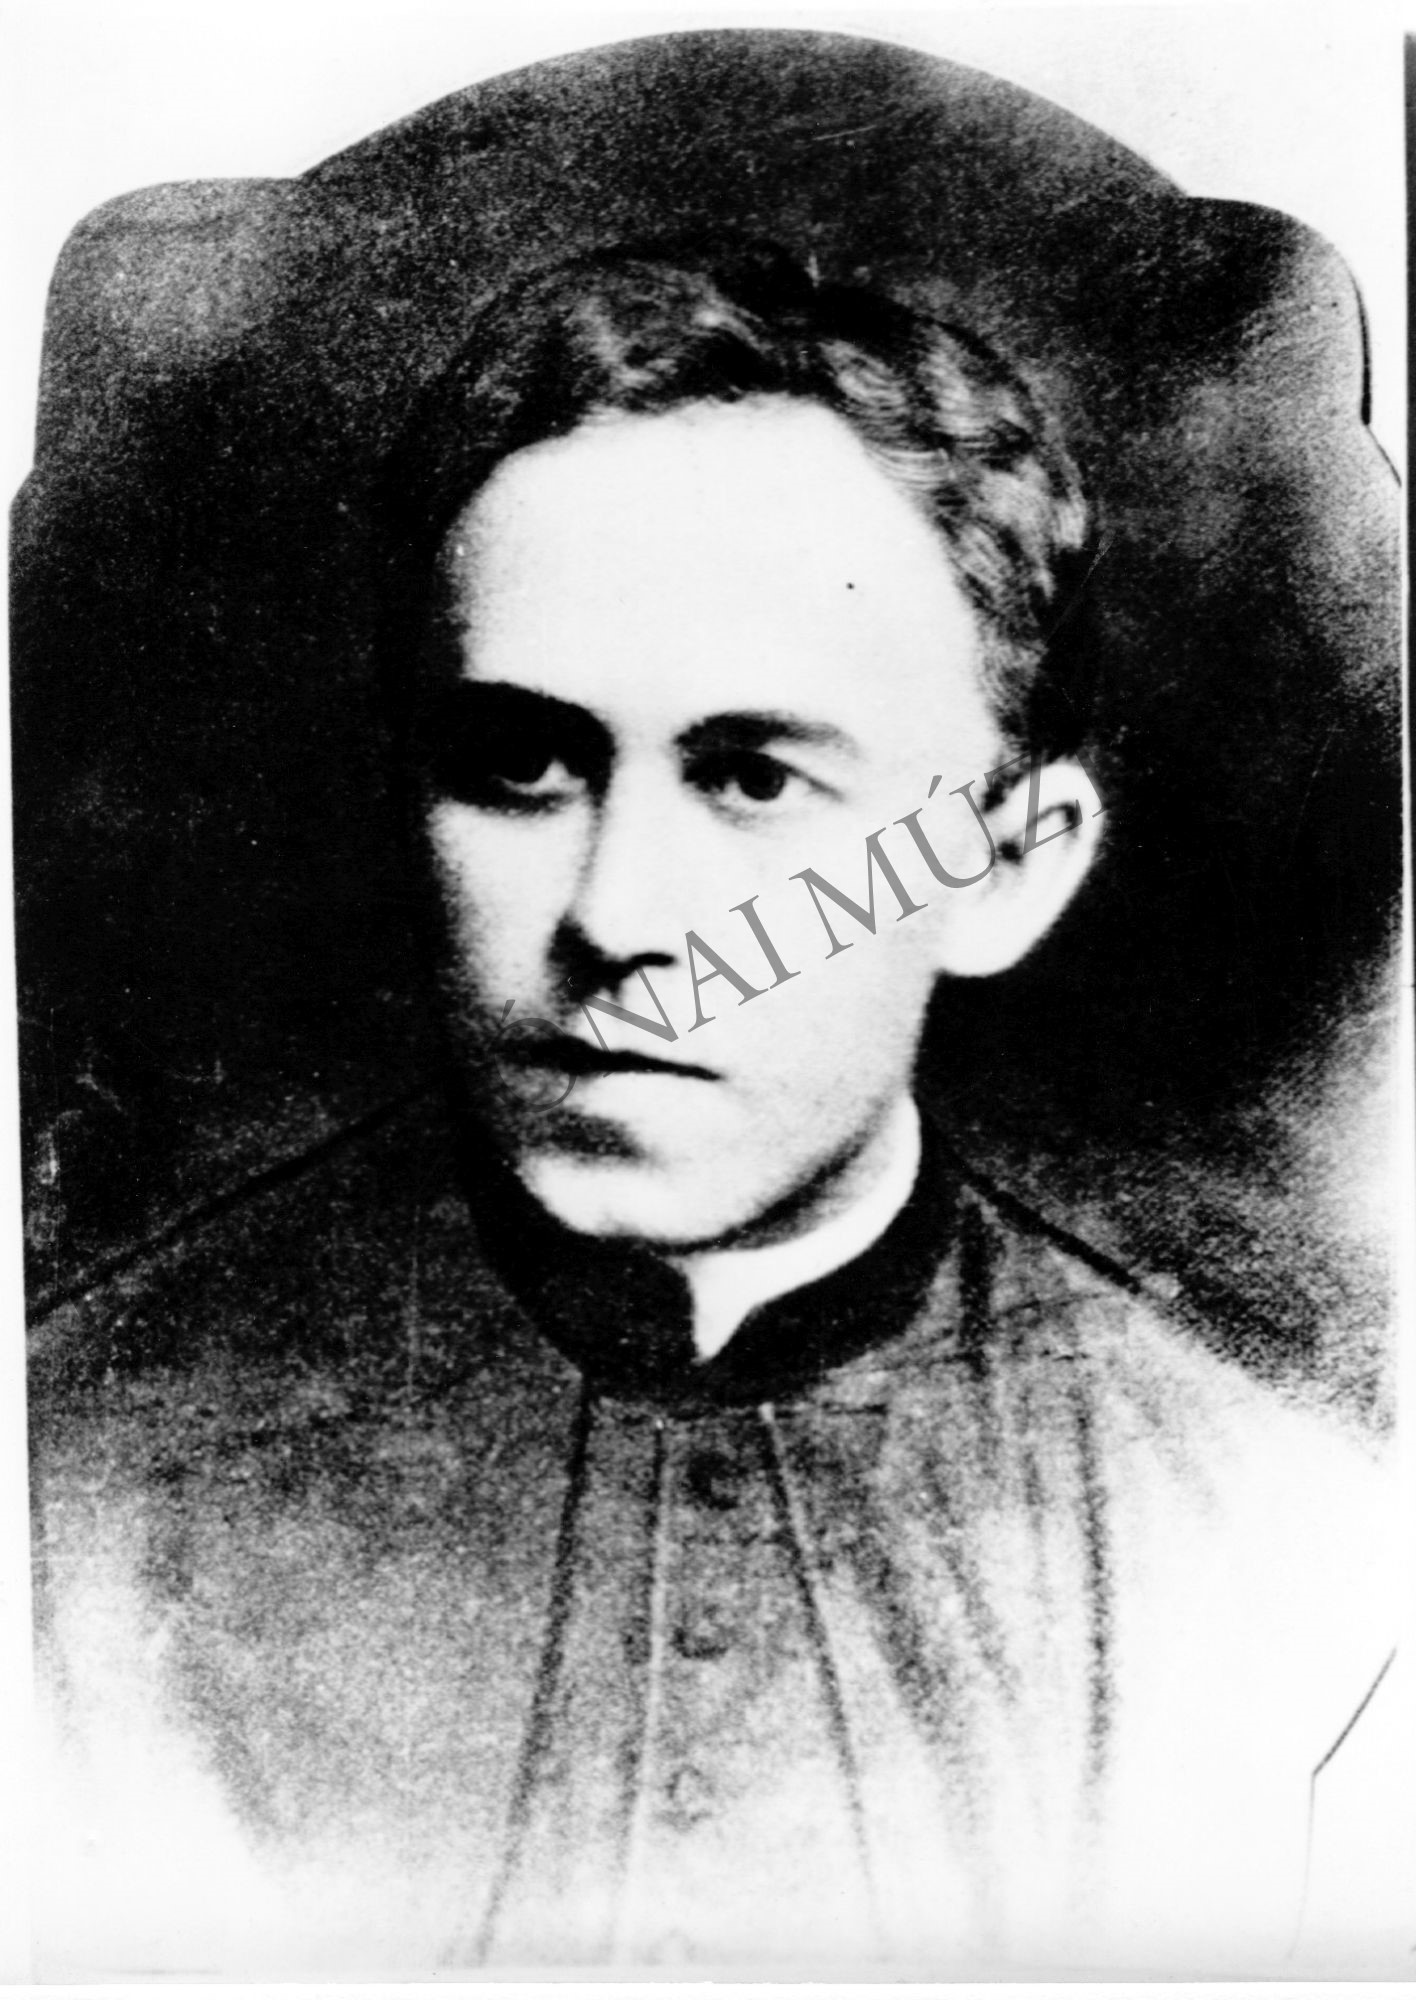 Simon József káplán, a marcali munkástanács tagja (1892 május 6. Szenyér - 1919. augusztus 28. Marcali) (Rippl-Rónai Múzeum CC BY-NC-SA)